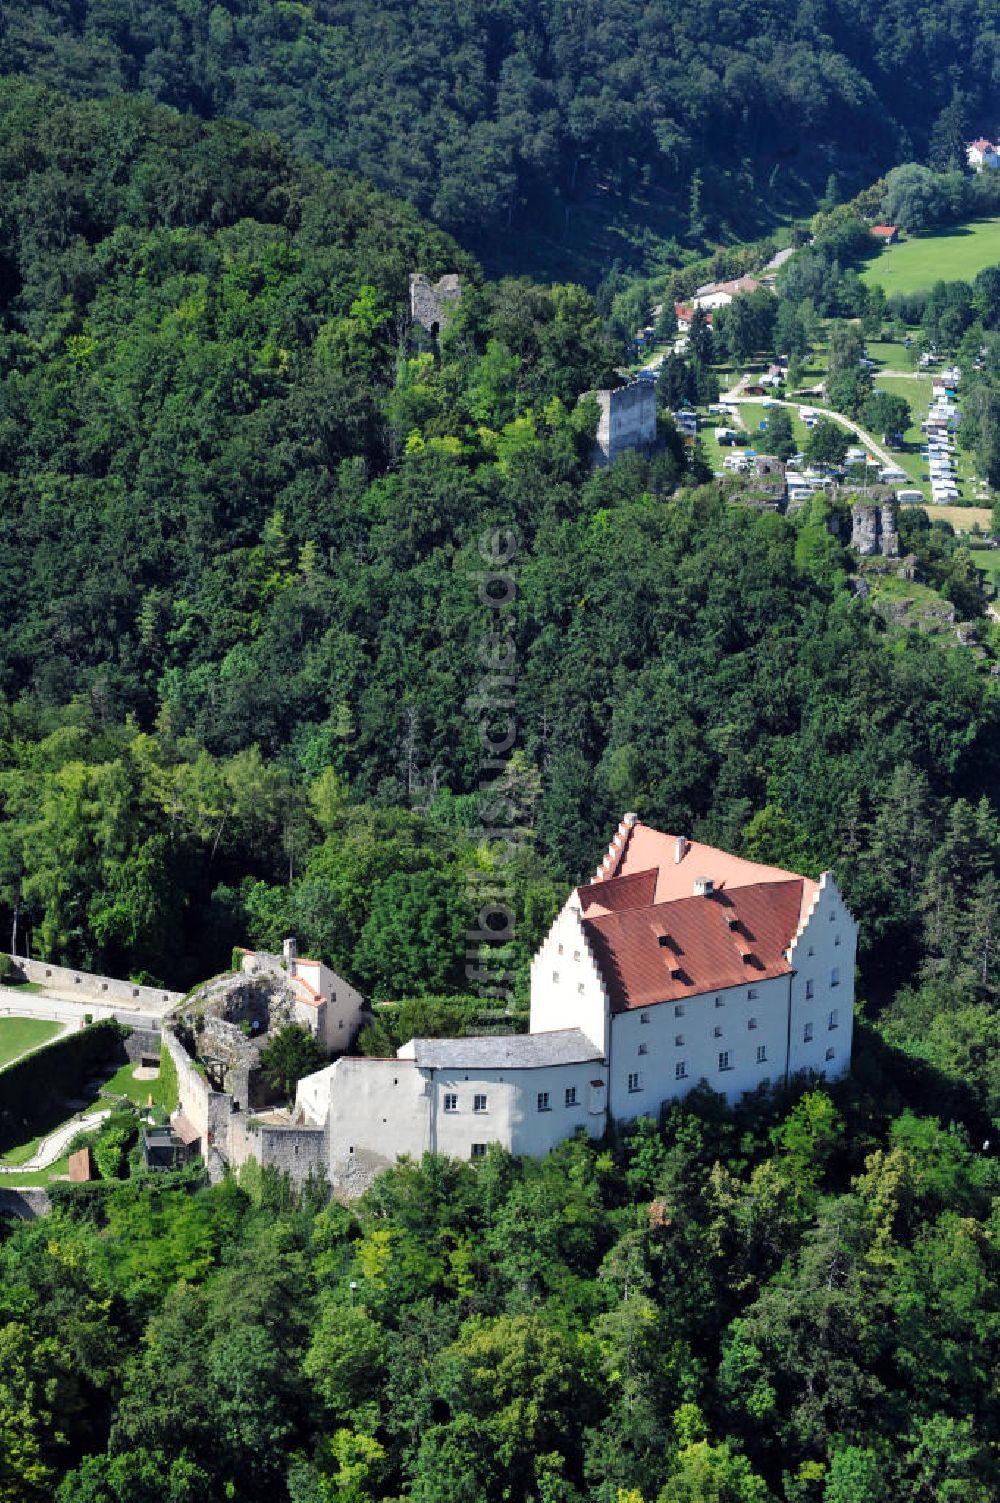 Luftbild Riedenburg / Bayern - Falkenhof Schloss Rosenburg in Riedenburg, Bayern